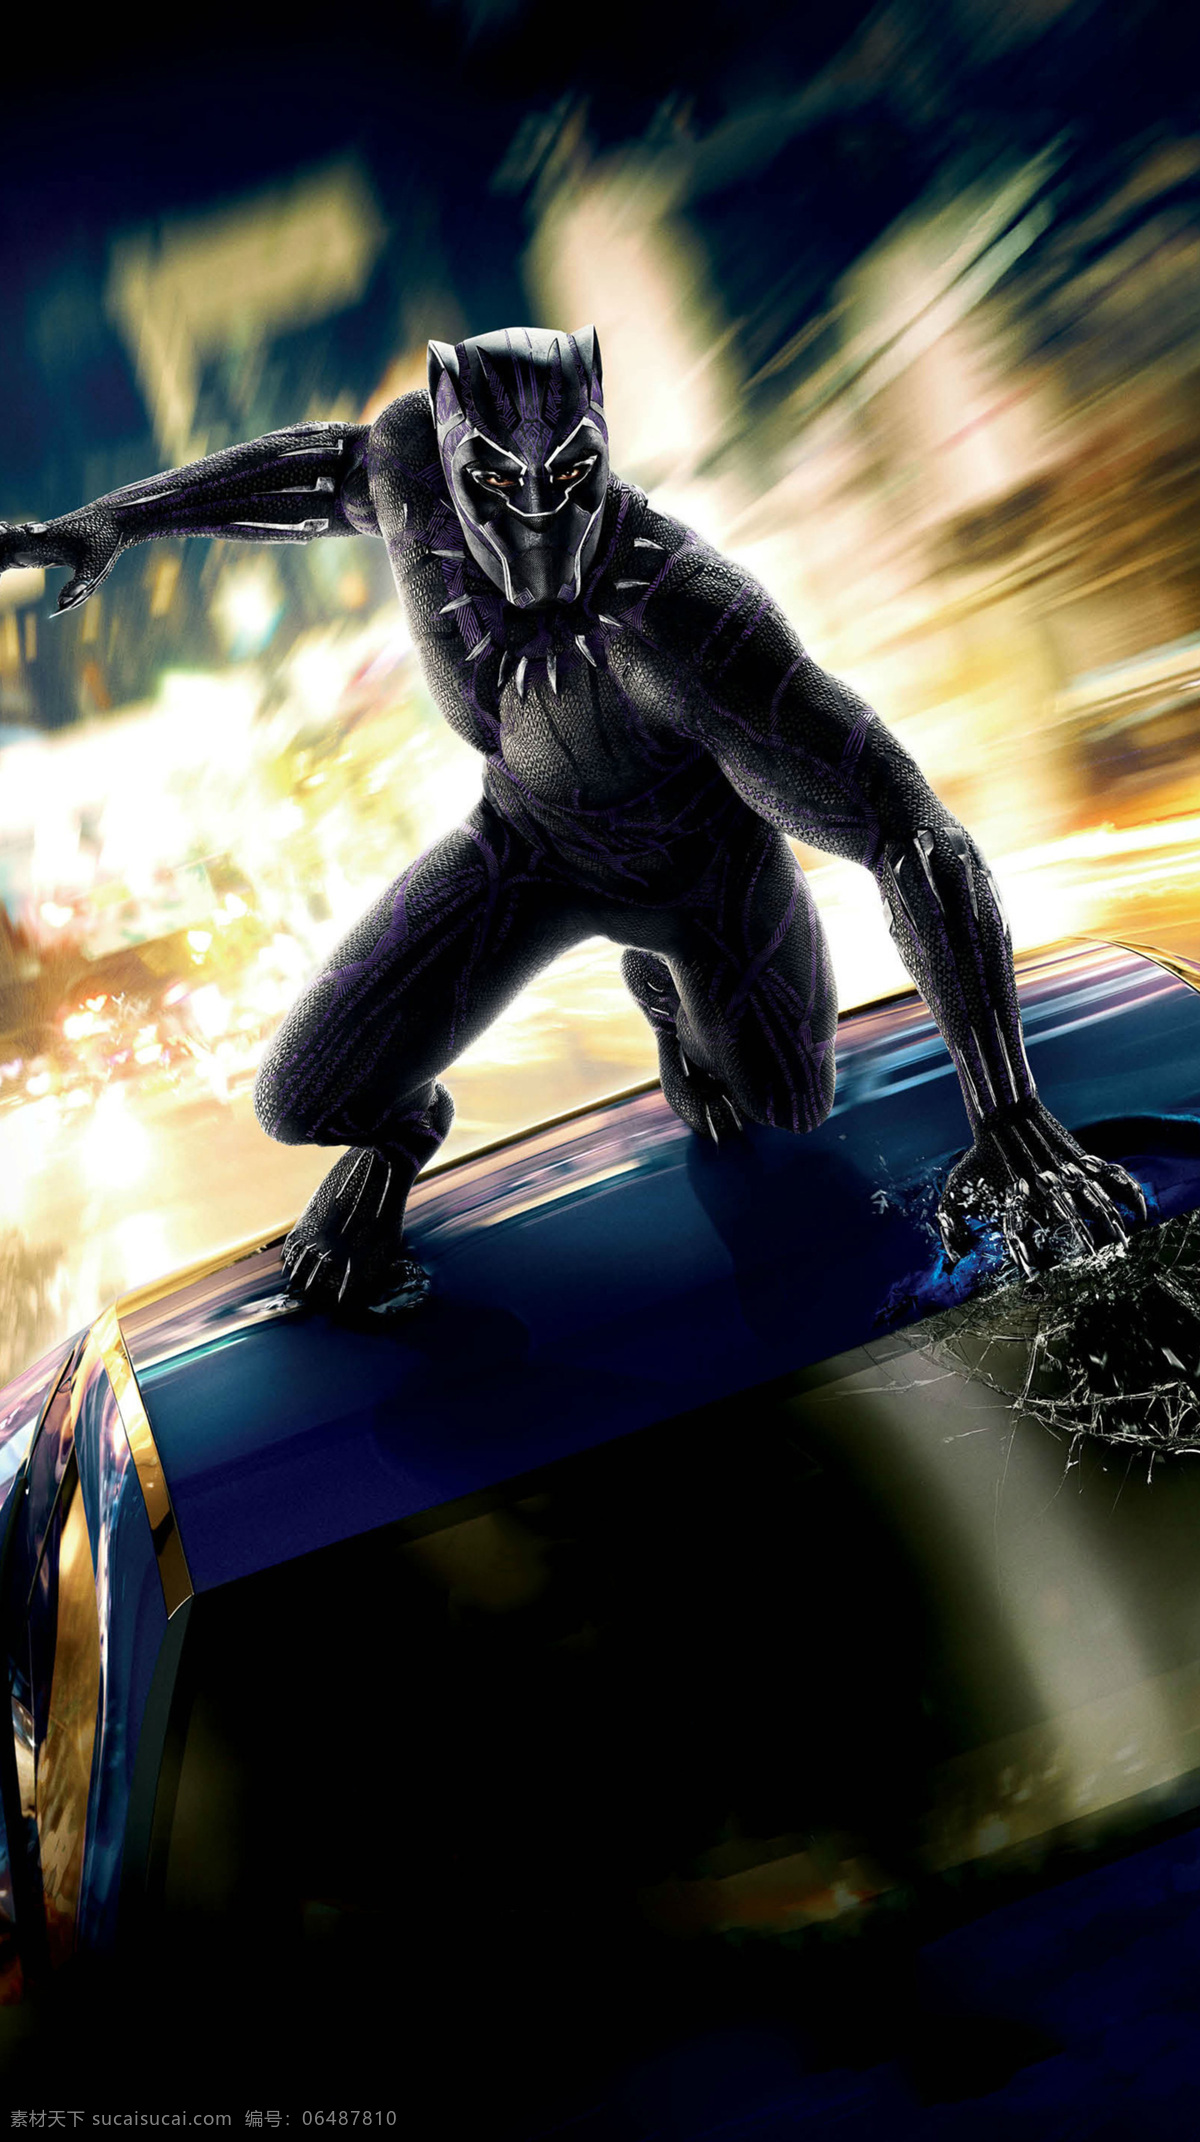 复仇者联盟 瓦坎达 黑豹 首领 超级英雄 logo 领袖 漫威 英雄 漫威宇宙 电影海报 marvel cinematic 文化艺术 影视娱乐